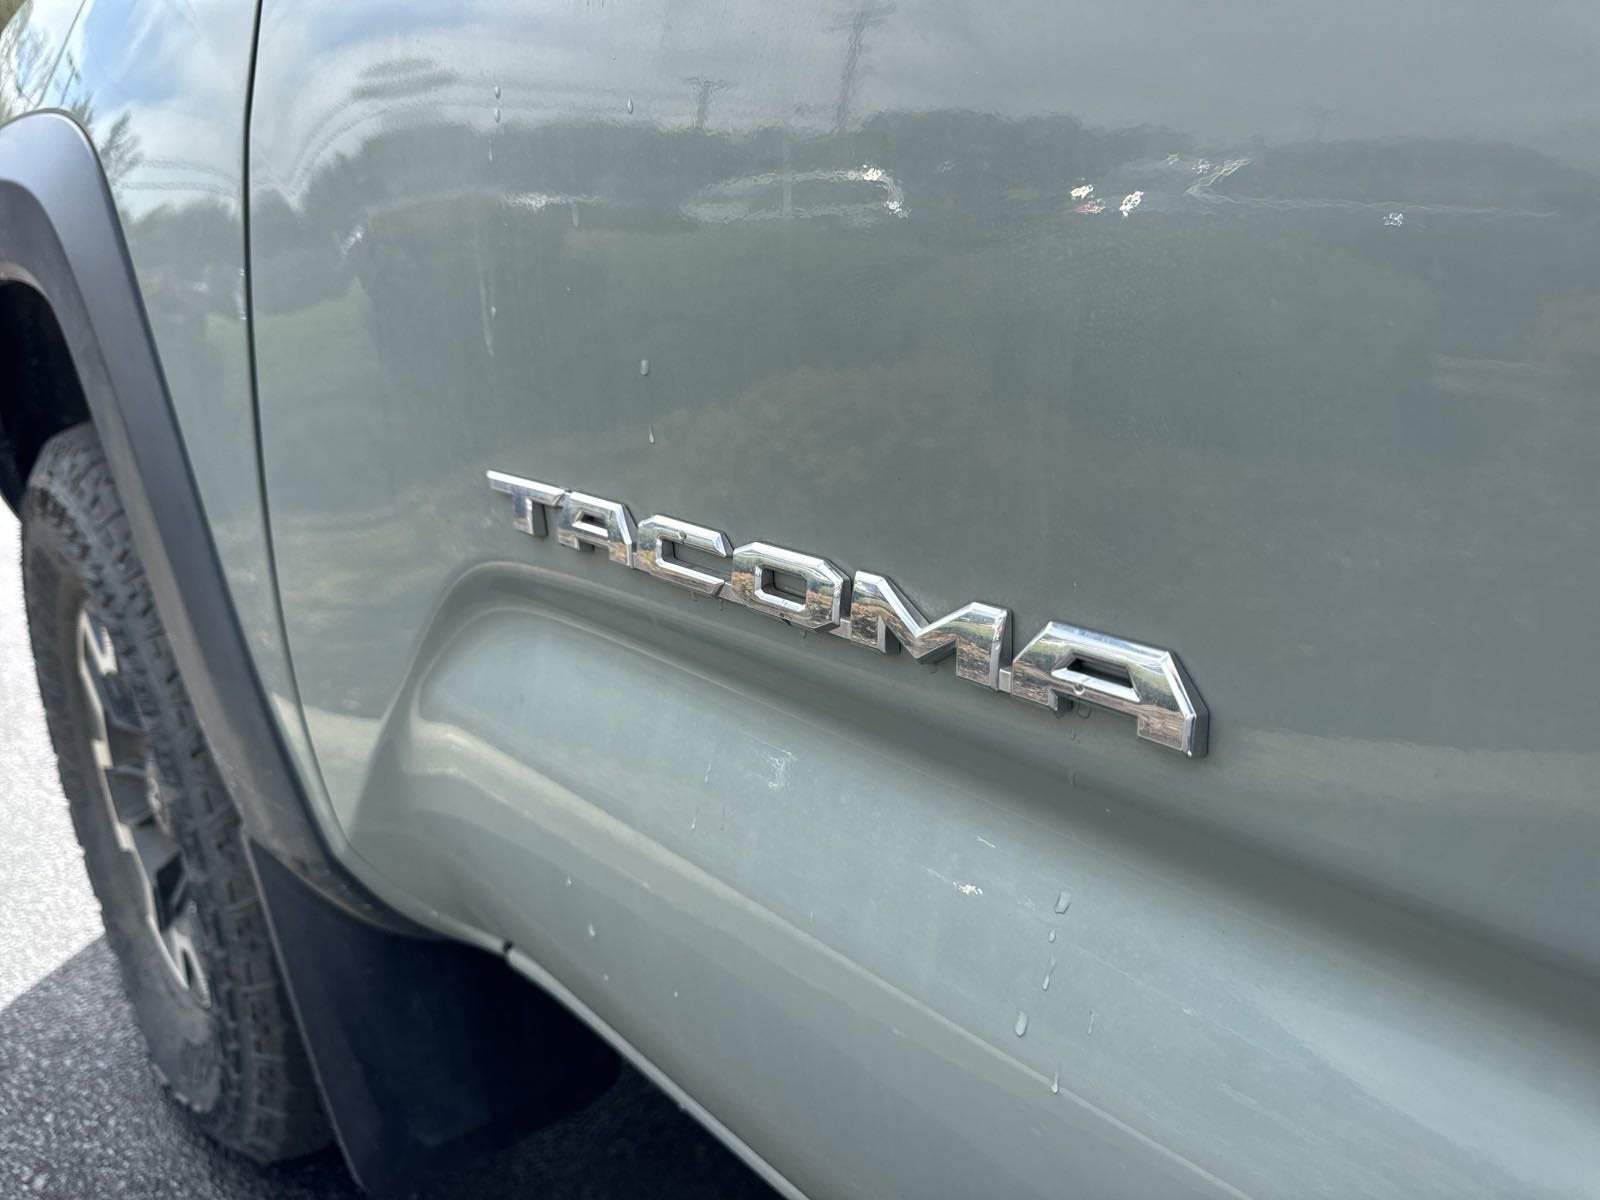 2022 Toyota Tacoma TRD Off Road